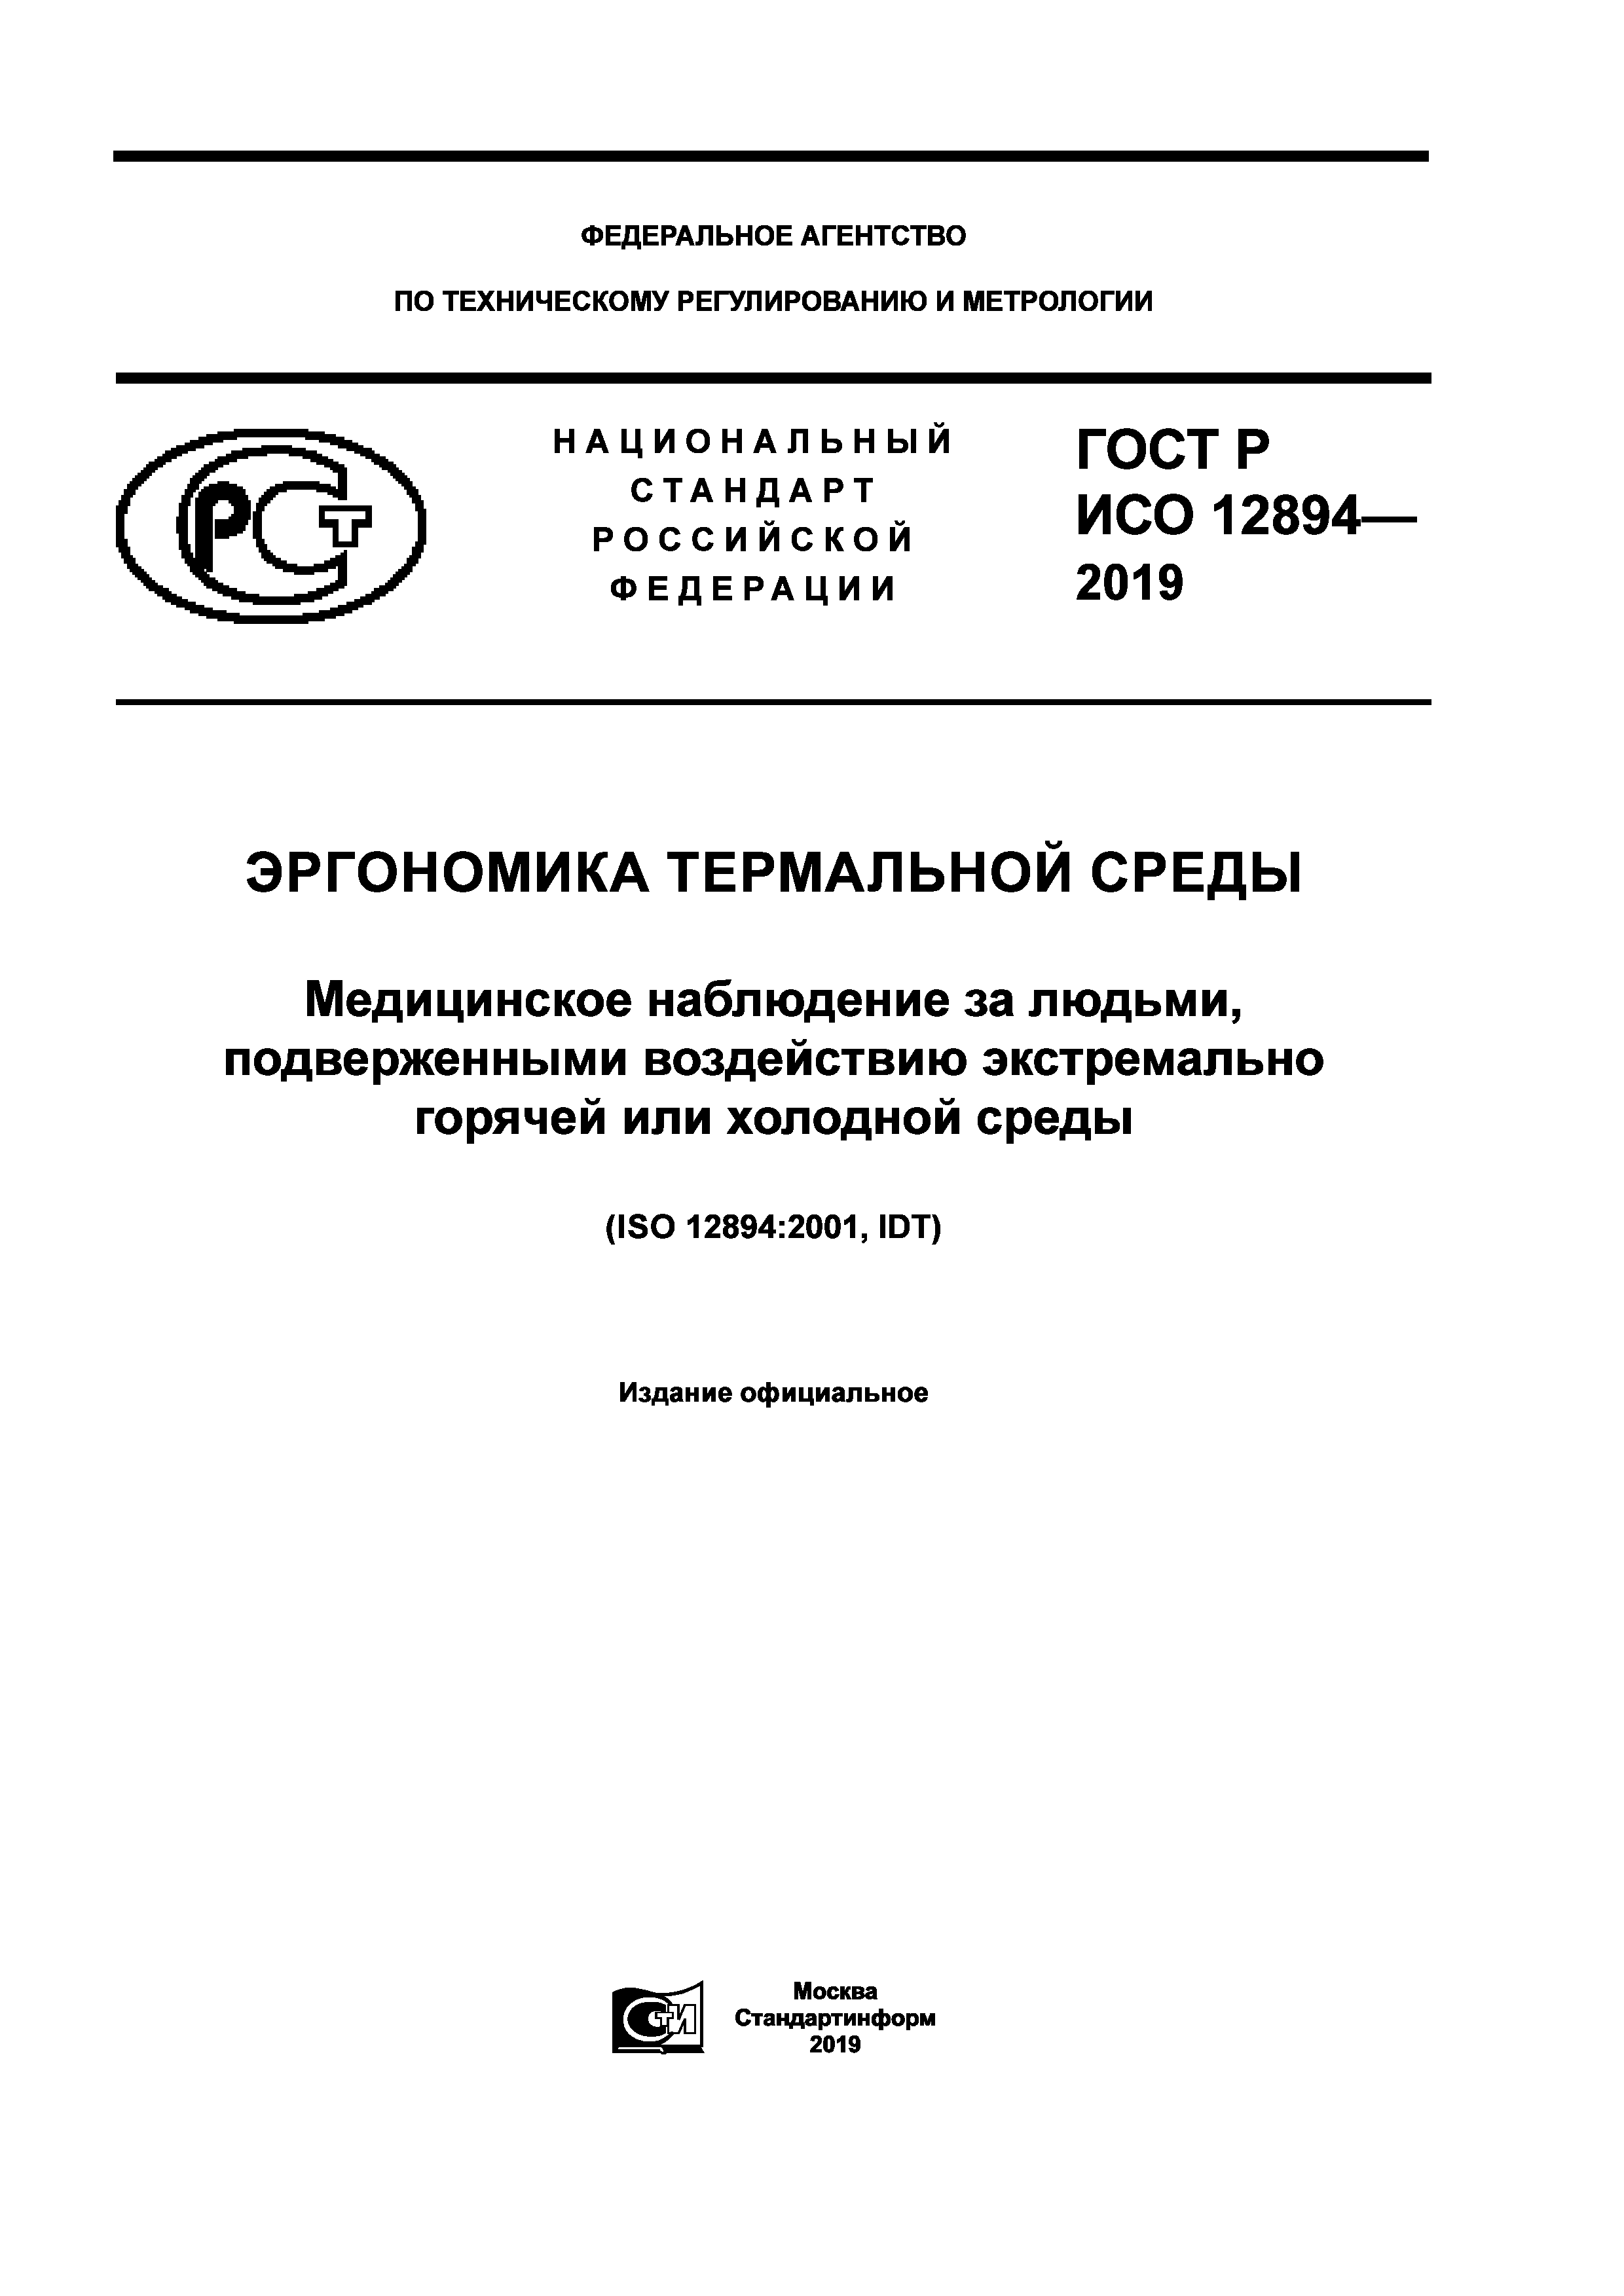 ГОСТ Р ИСО 12894-2019